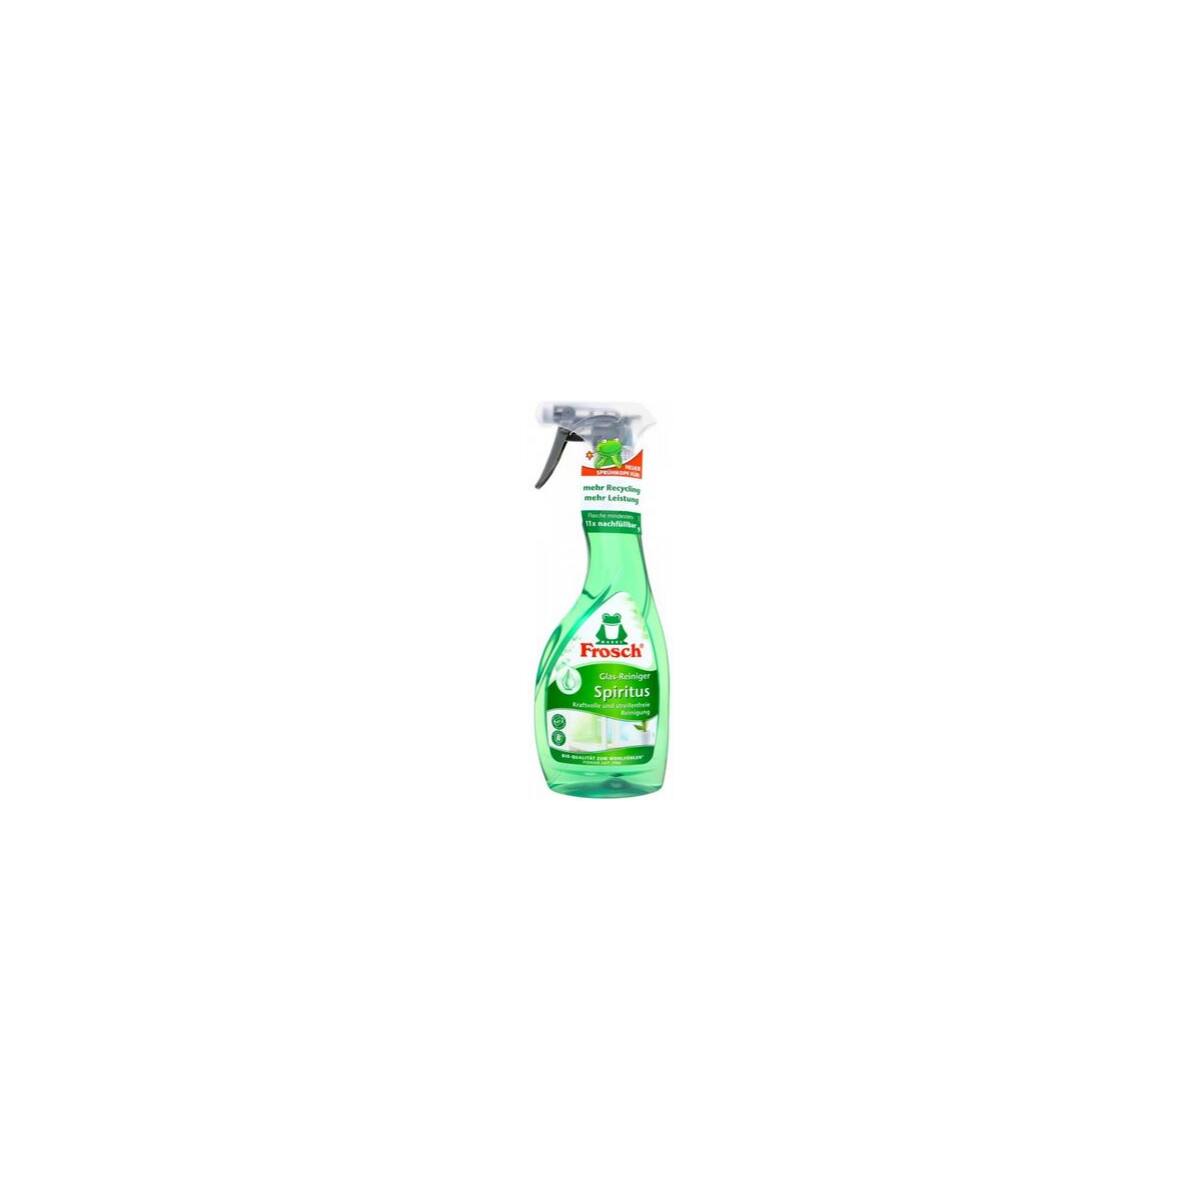 Frosch Spiritus Glasreiniger Sprühflasche 500 ml, 3,31 €